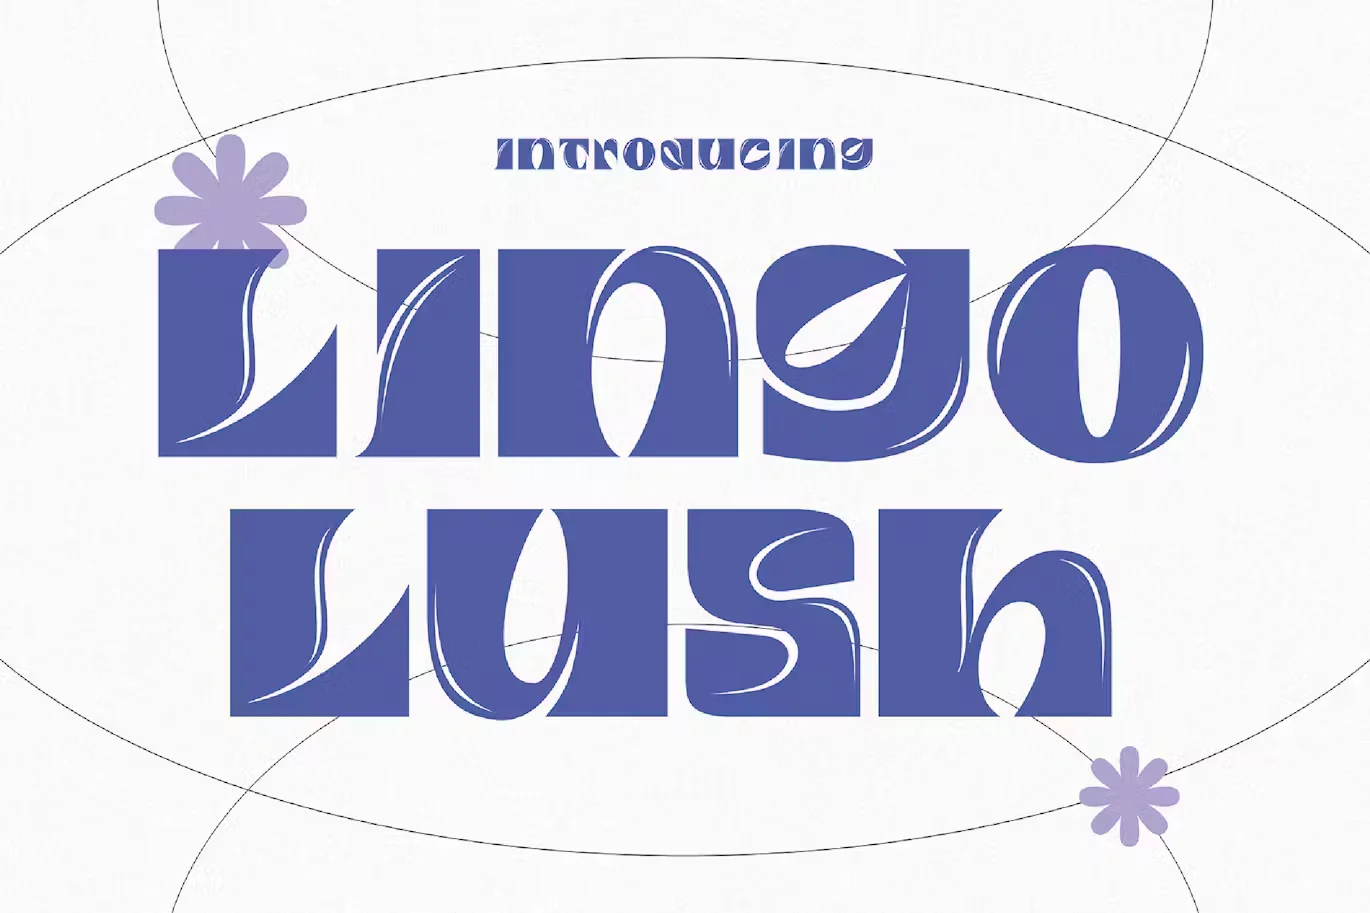 Lingo Lush - Surreal Typeface